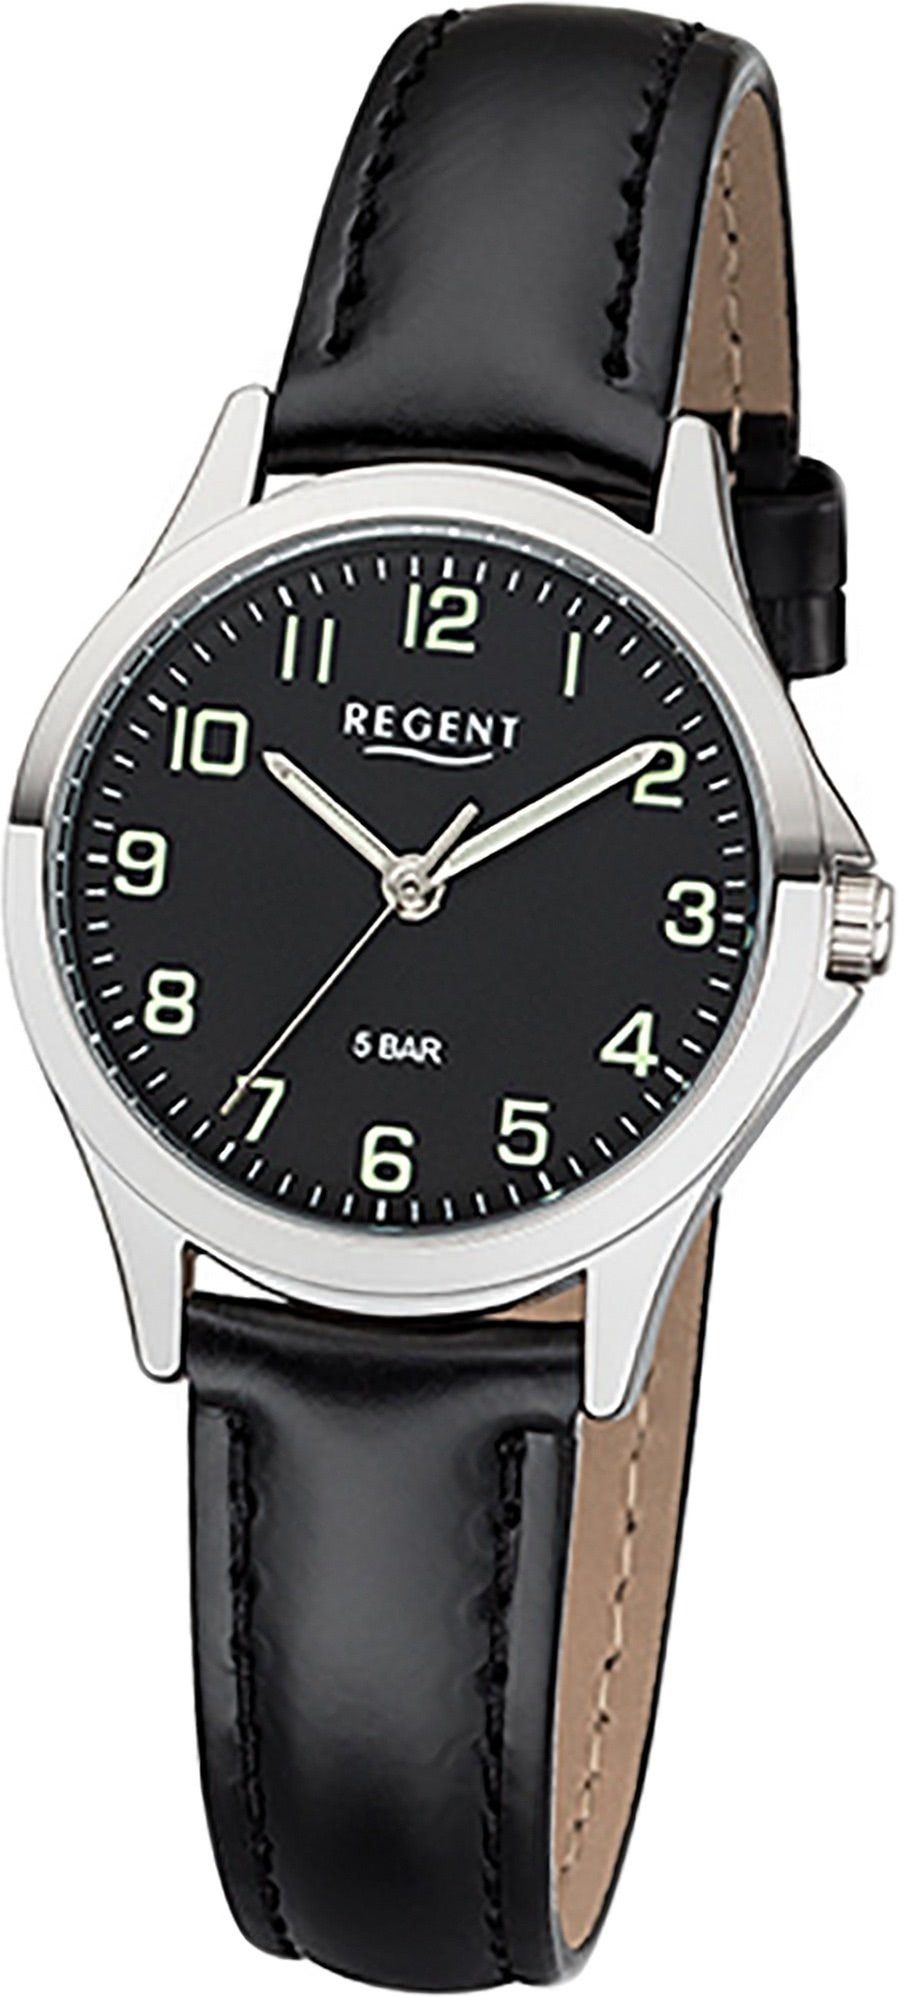 Regent Quarzuhr Regent Leder Damen Uhr 2112419 Analog, Damenuhr Lederarmband schwarz, rundes Gehäuse, klein (ca. 29mm)